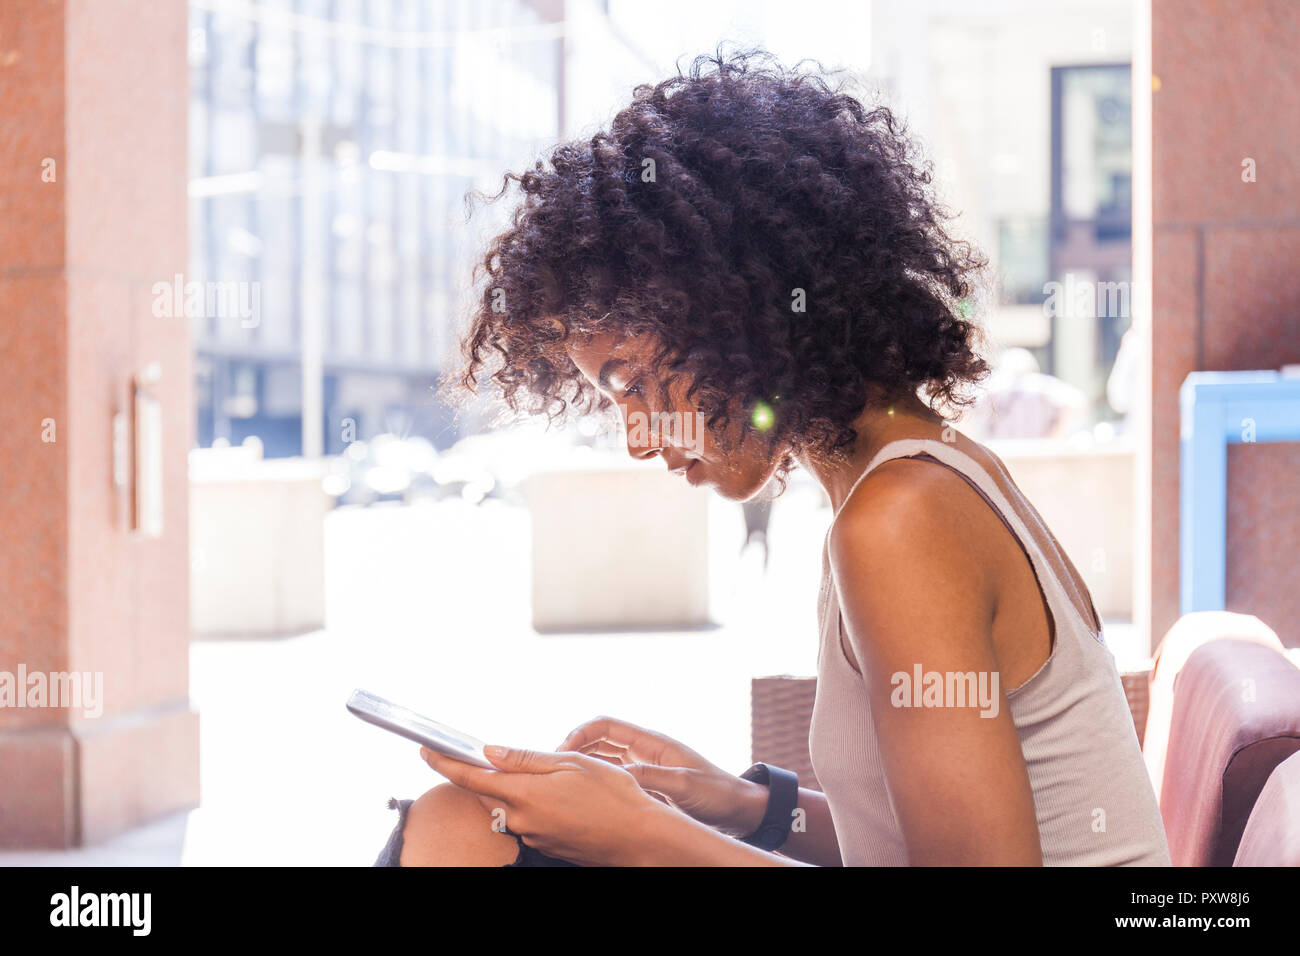 Junge Frau mit lockigem Haar im Straßencafe mit digitalen Tablet sitzen Stockfoto